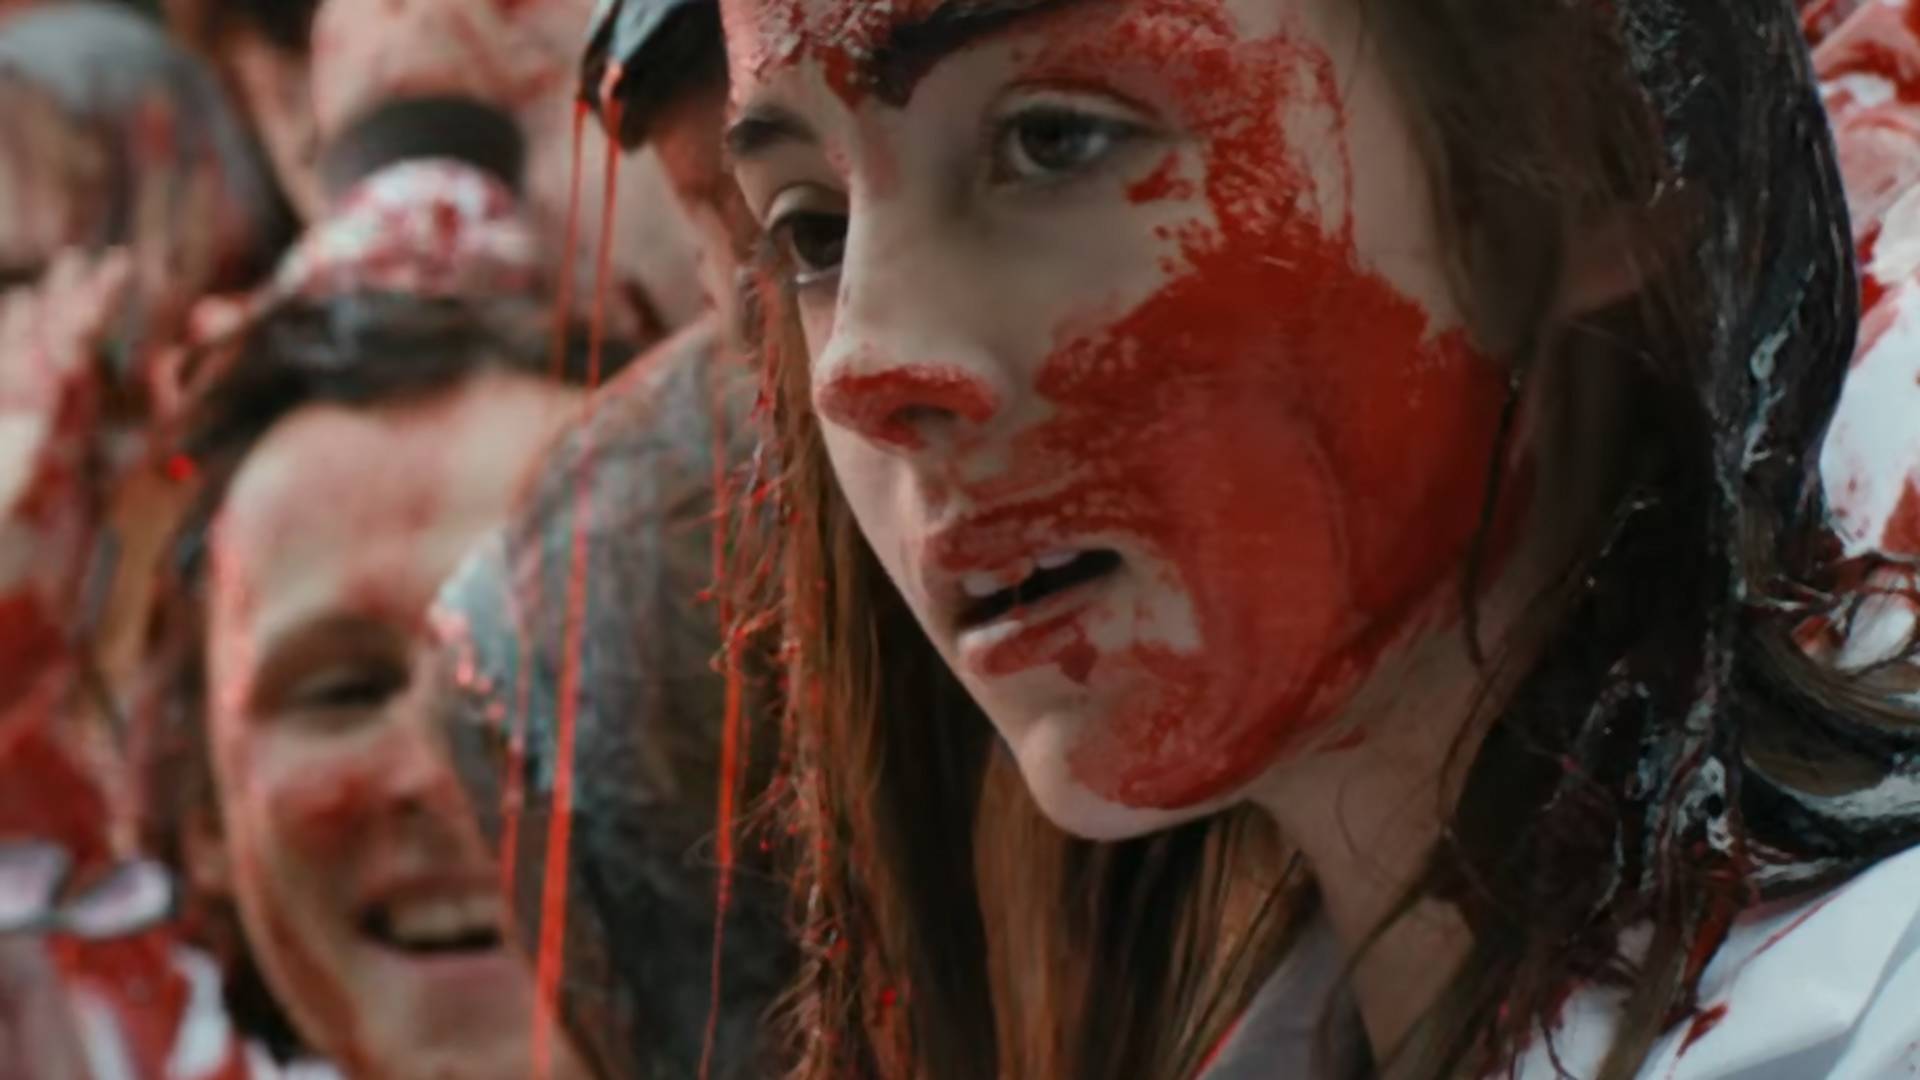 Zobacz trailer "Raw", na seansach którego mdleli ludzie. Najbardziej przerażający horror 2017?